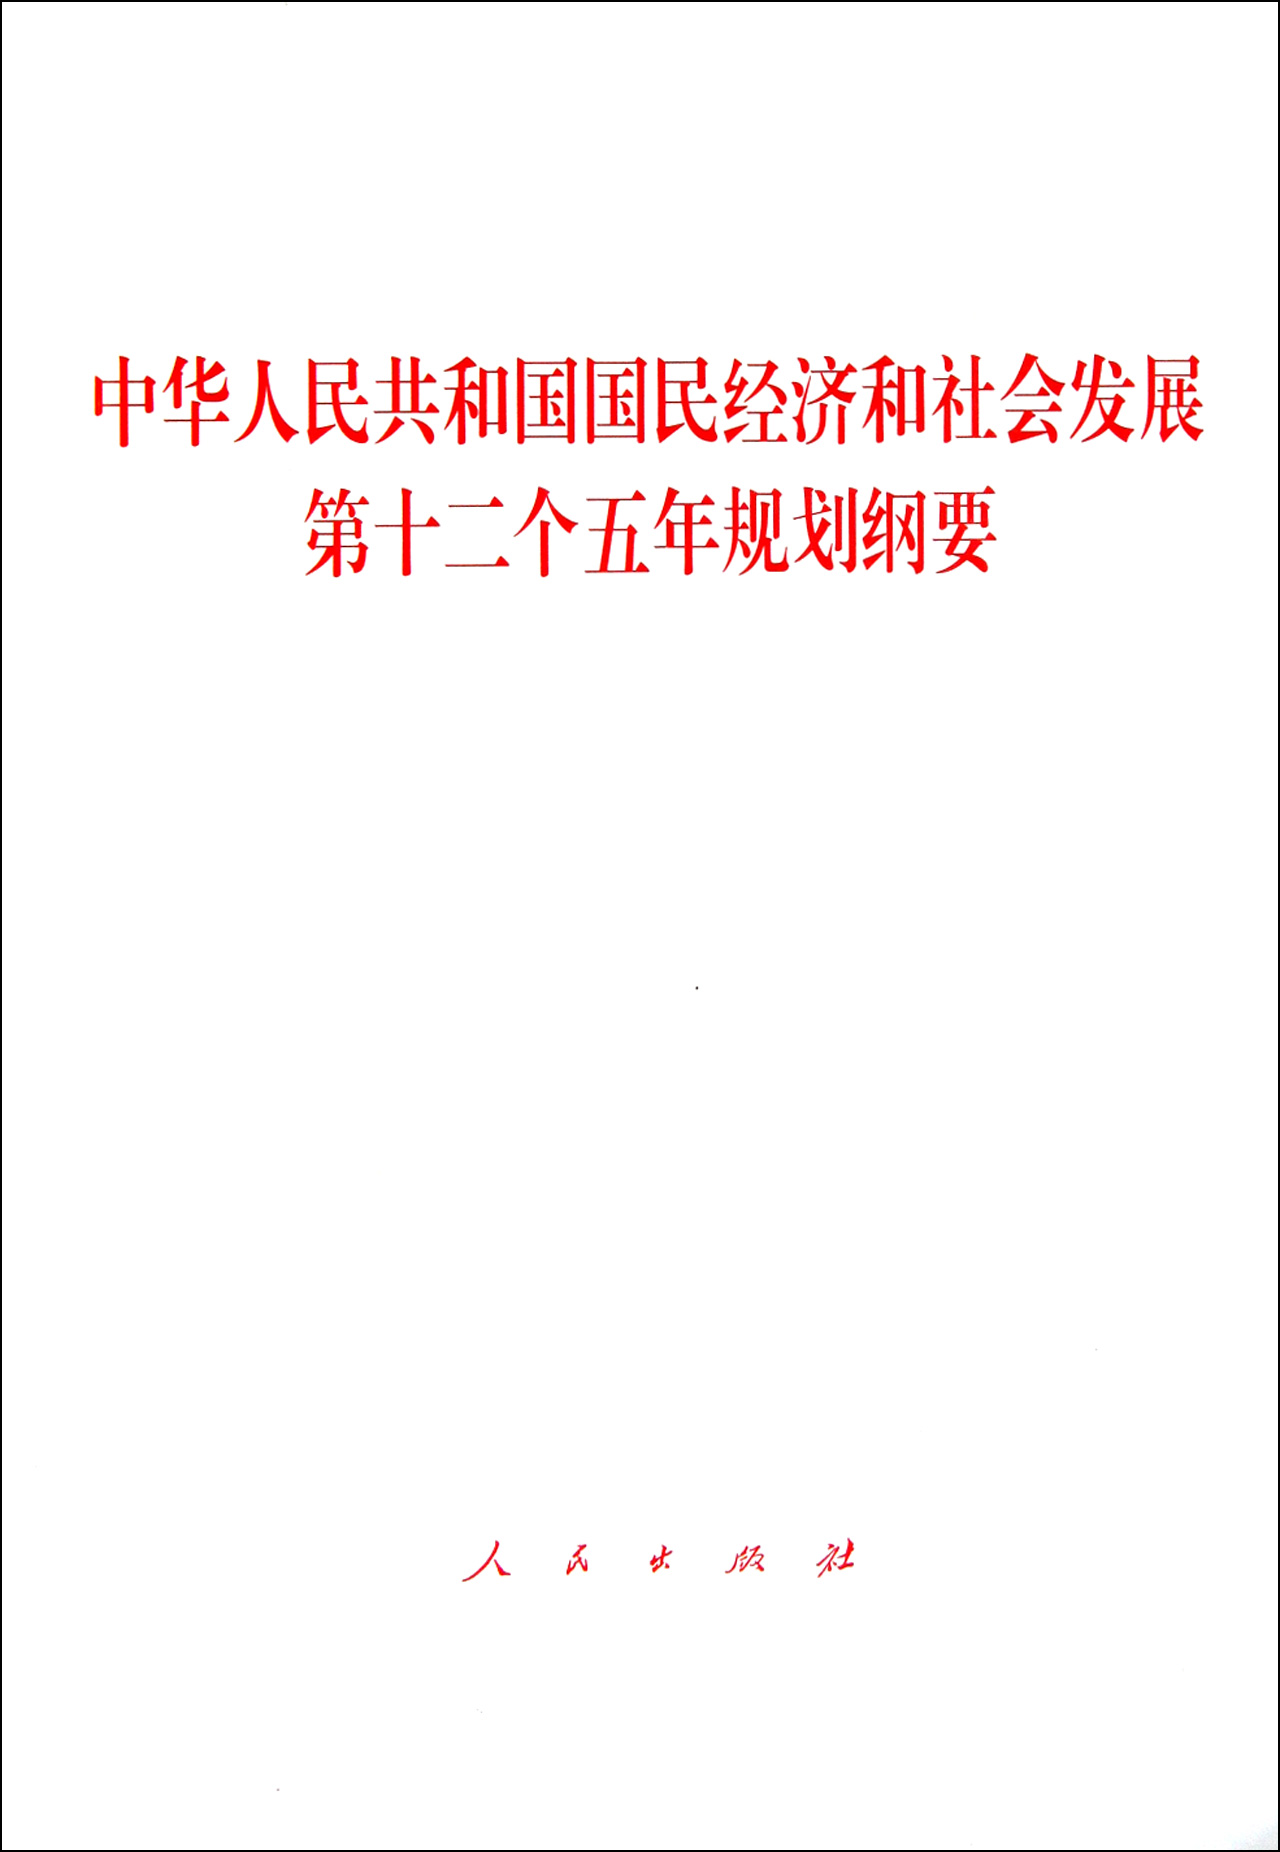 中華人民共和國國民經濟和社會發展第十二個五年規劃綱要